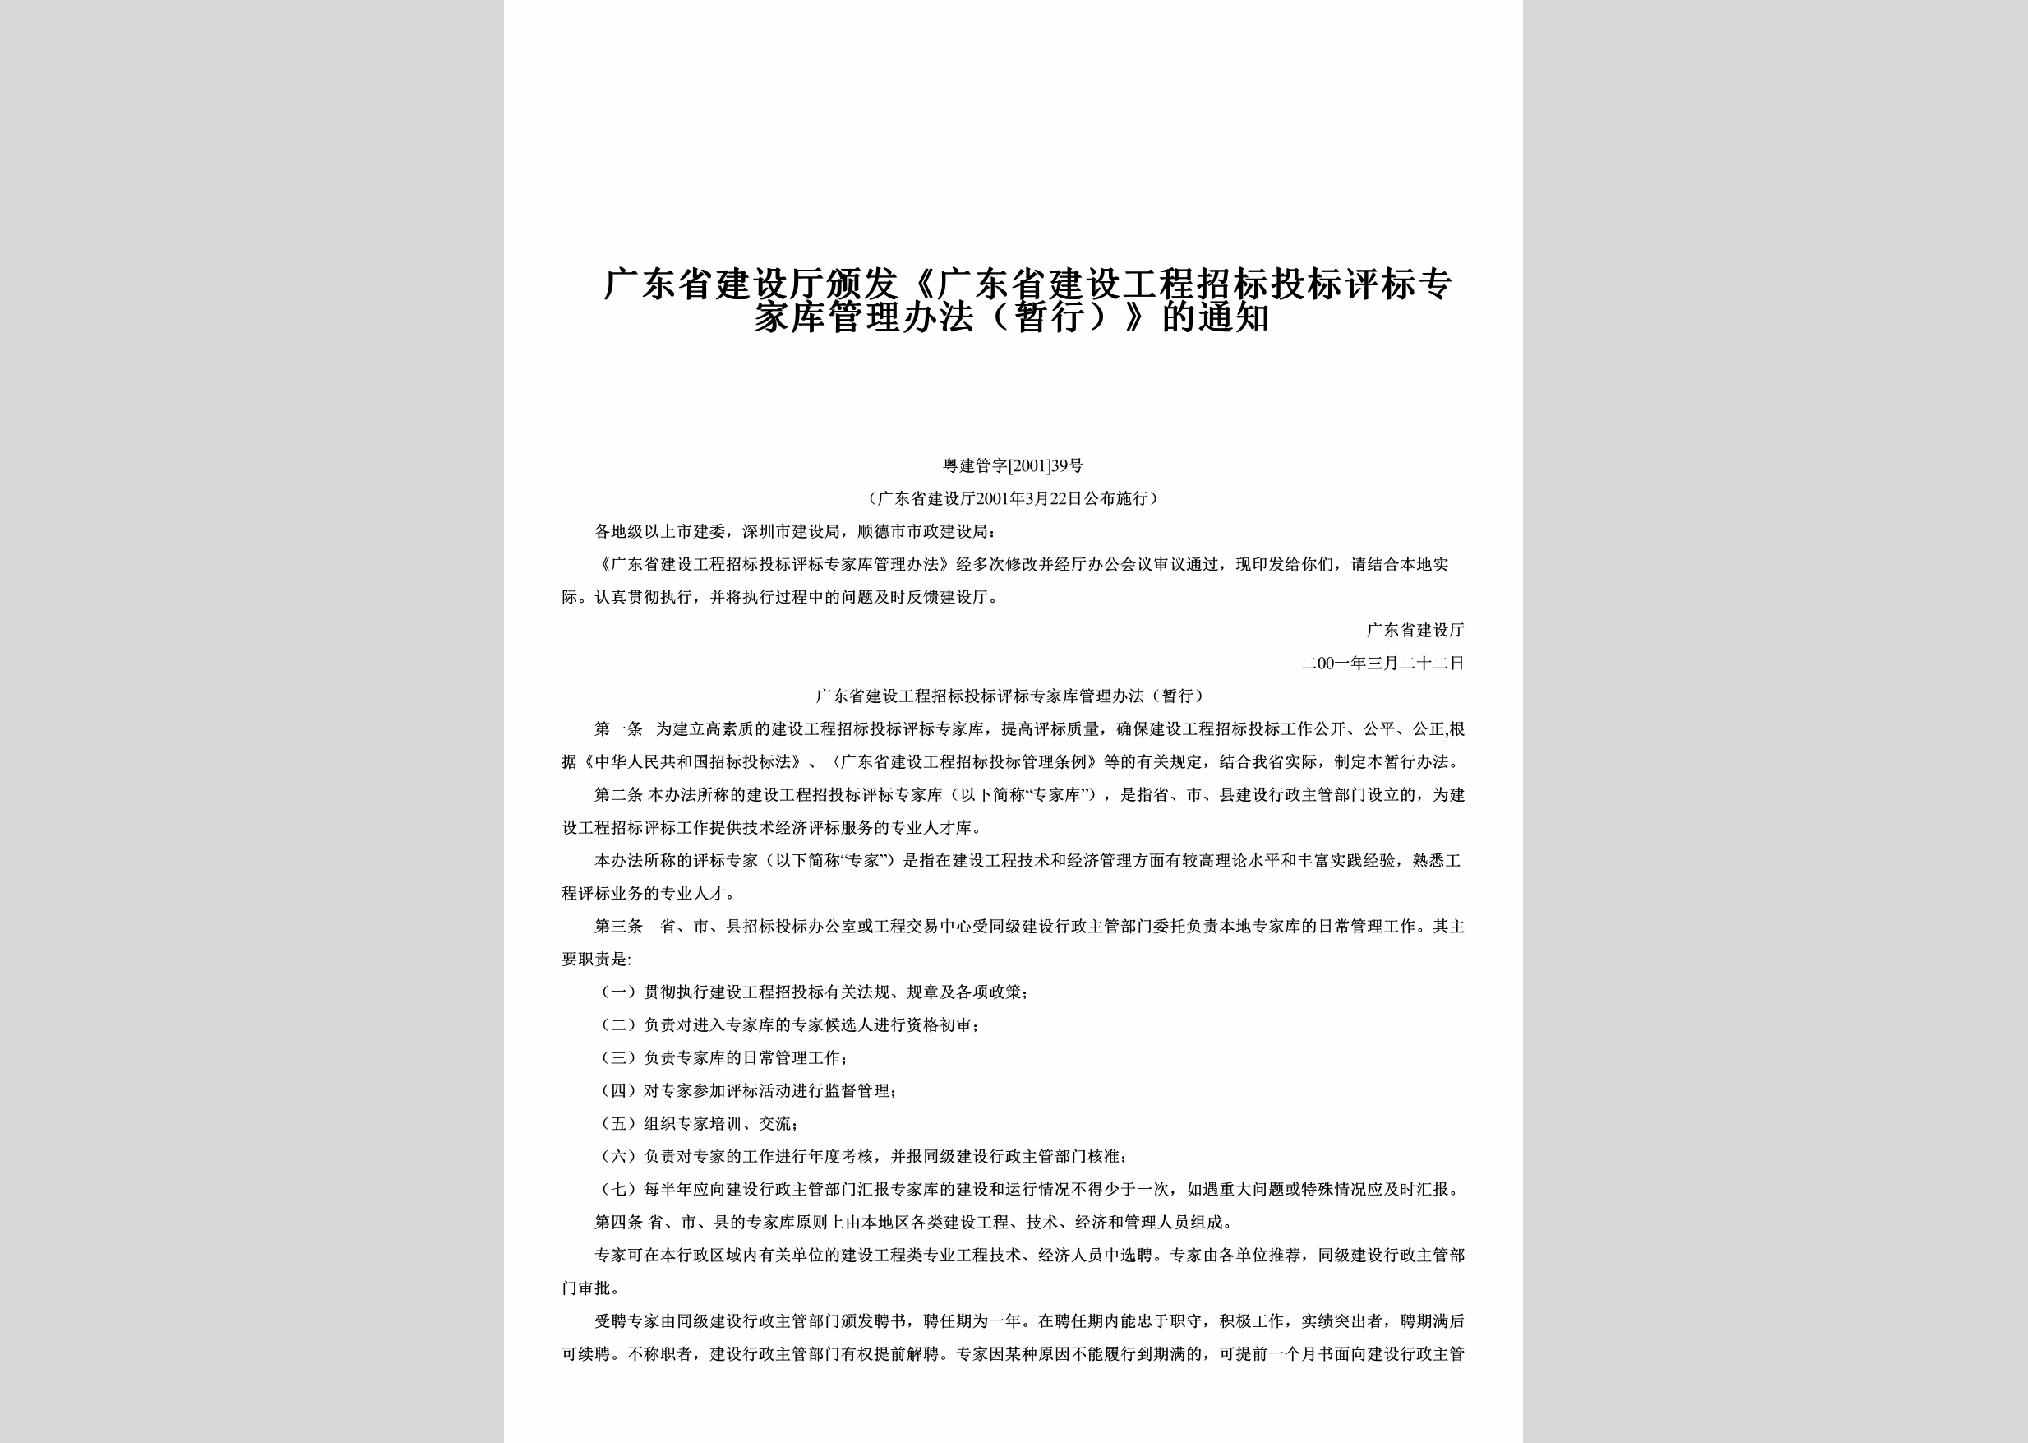 粤建管字[2001]39号：颁发《广东省建设工程招标投标评标专家库管理办法（暂行）》的通知